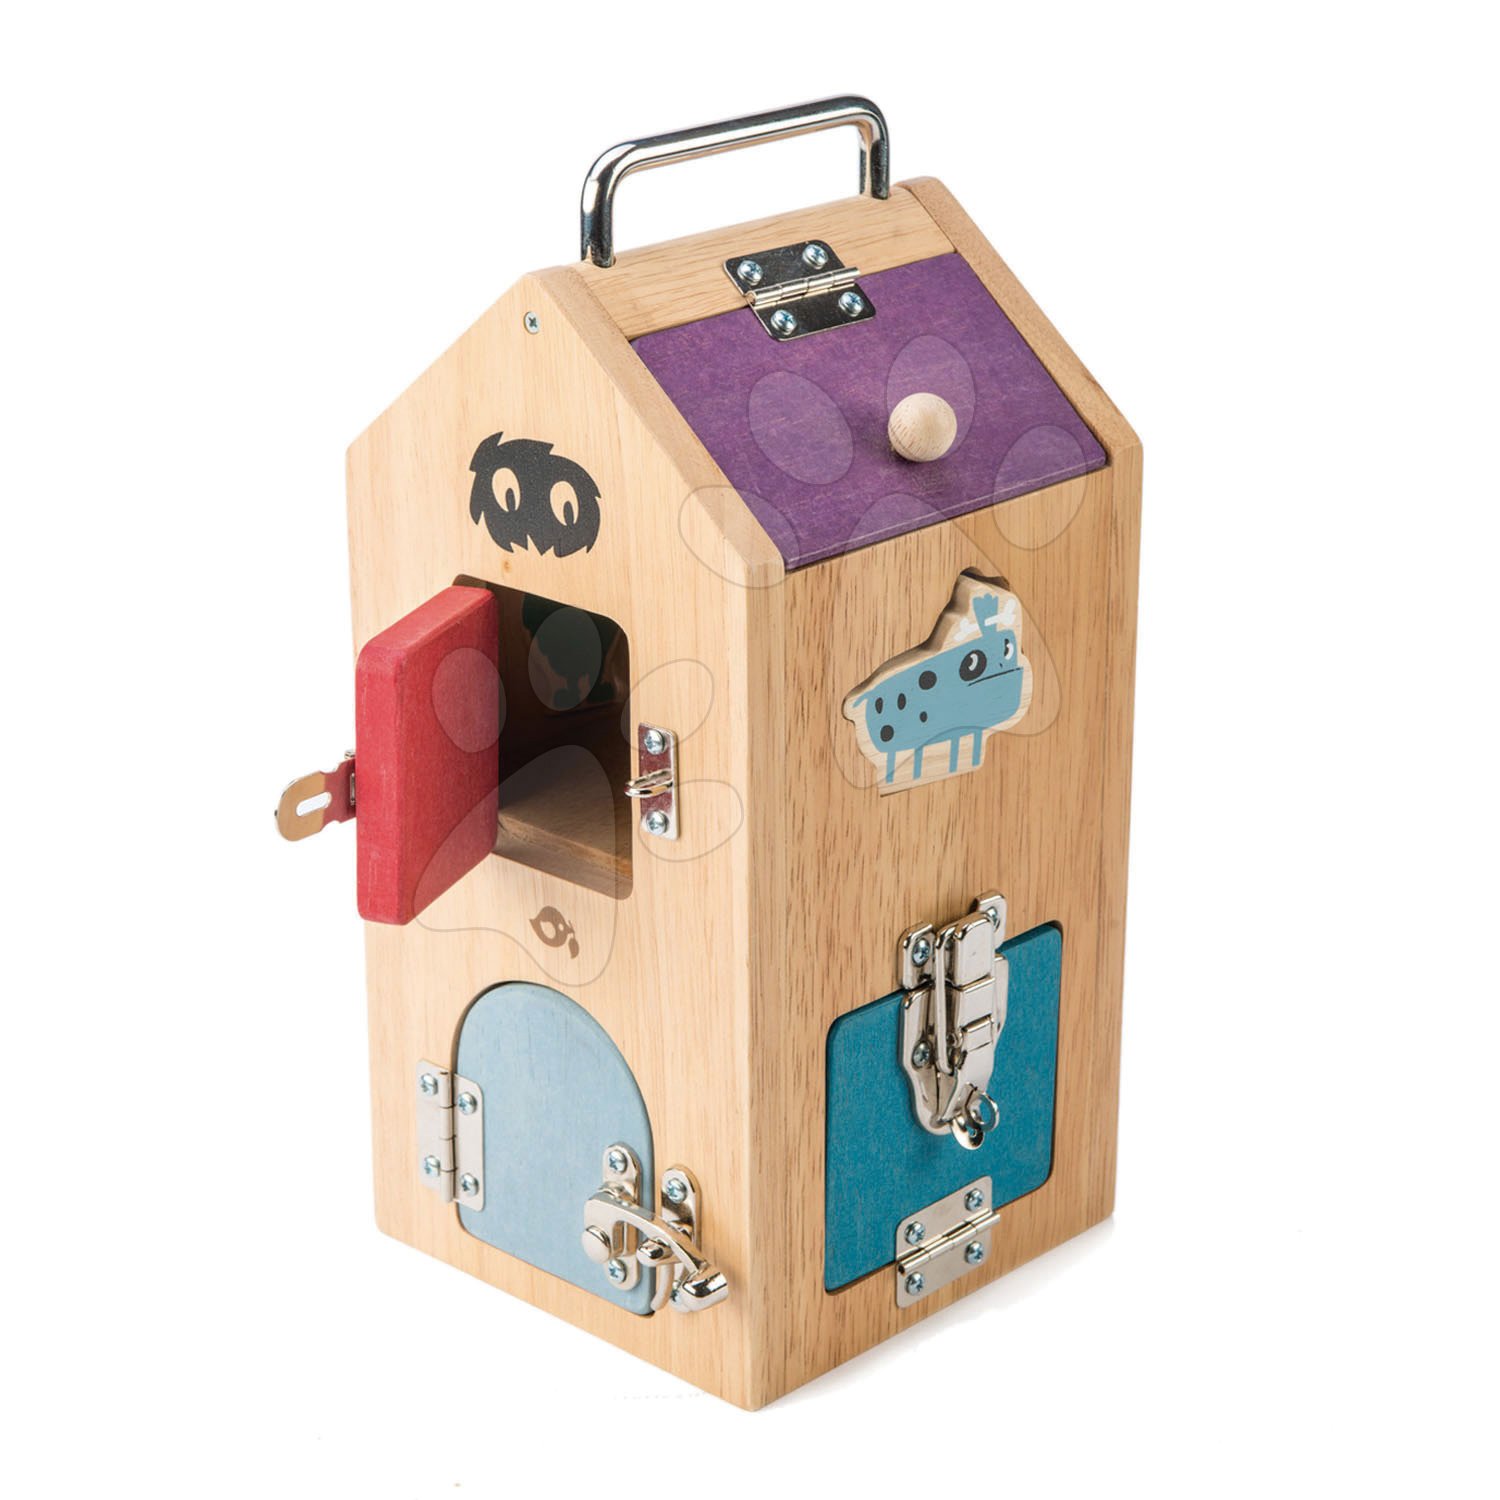 Drevený domček so strašidlami Monster Lock Box Tender Leaf Toys 8 dverí s 8 rôznymi zámkami a 2 strašidlá